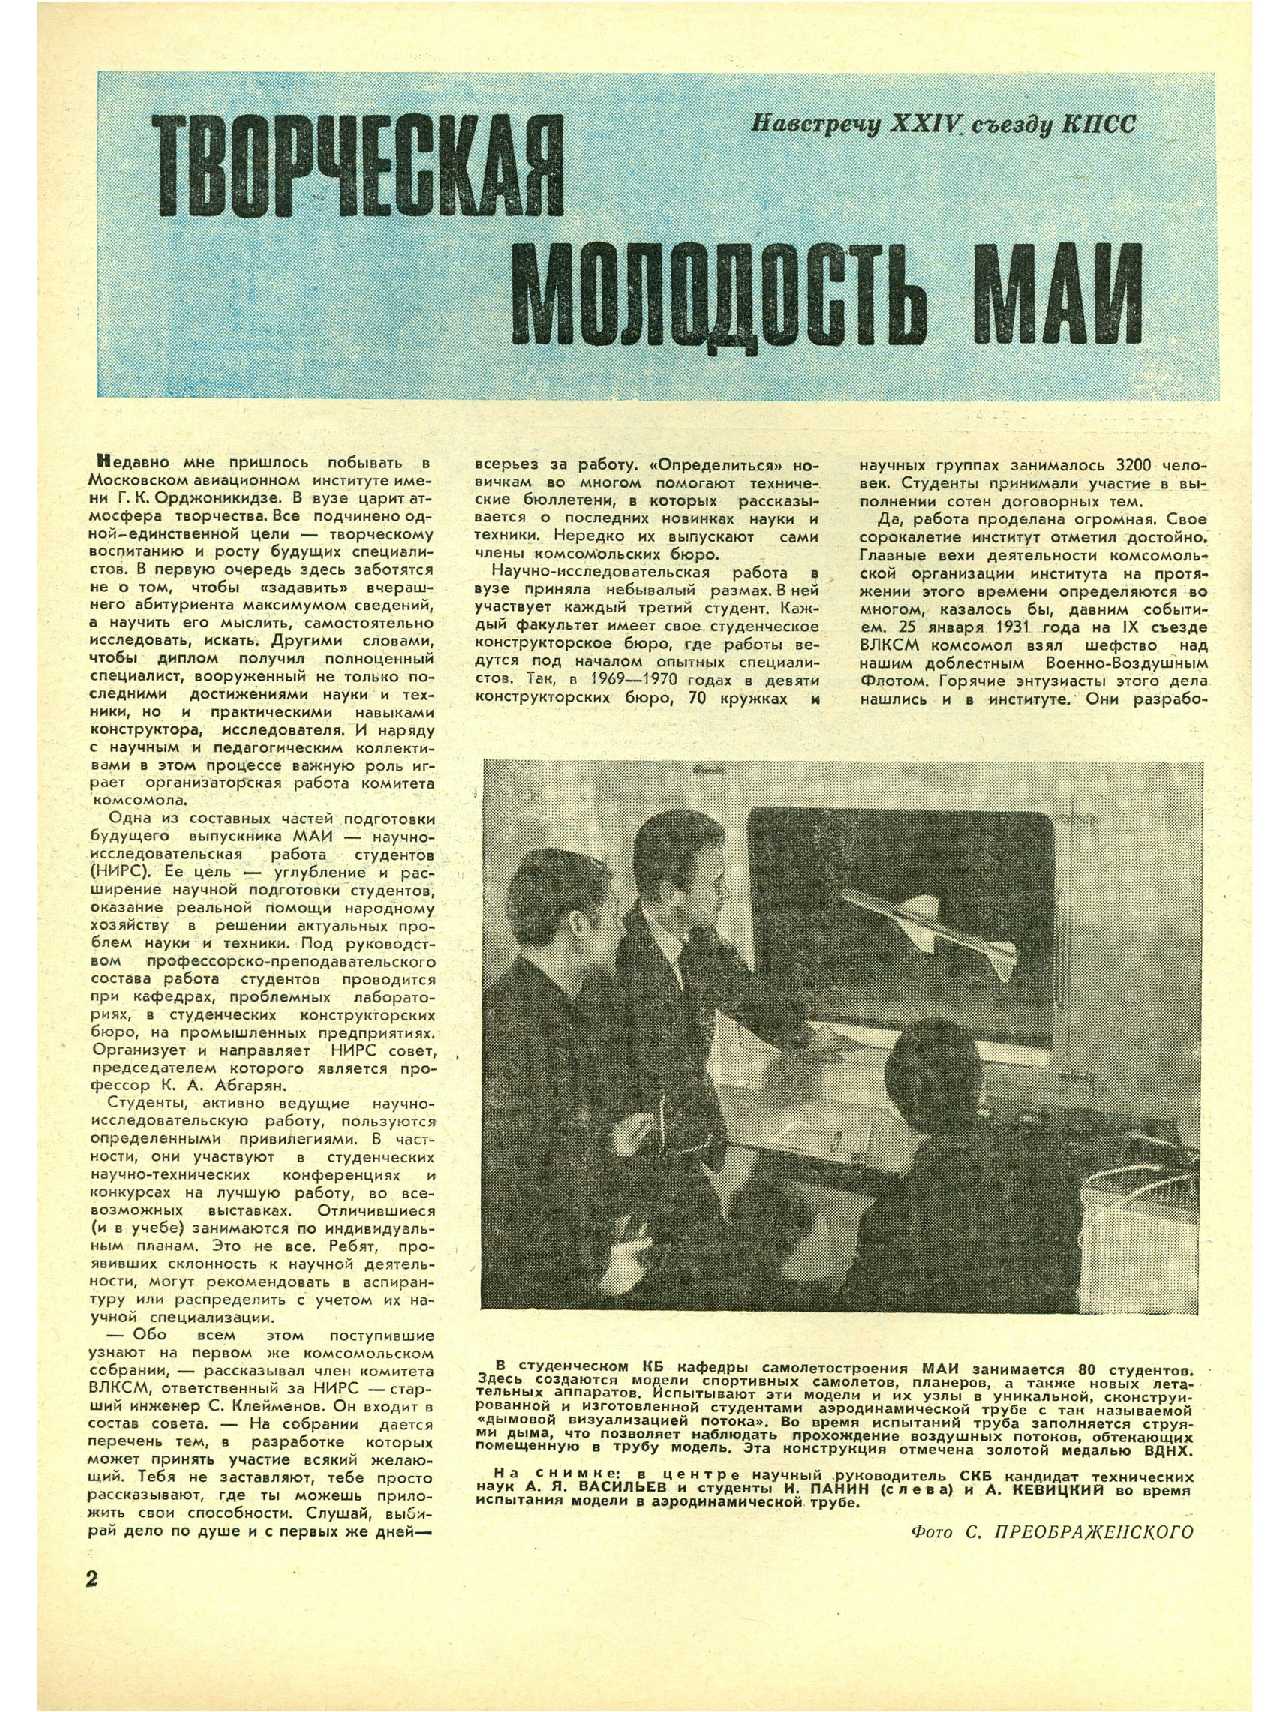 МК 2, 1971, 2 c.